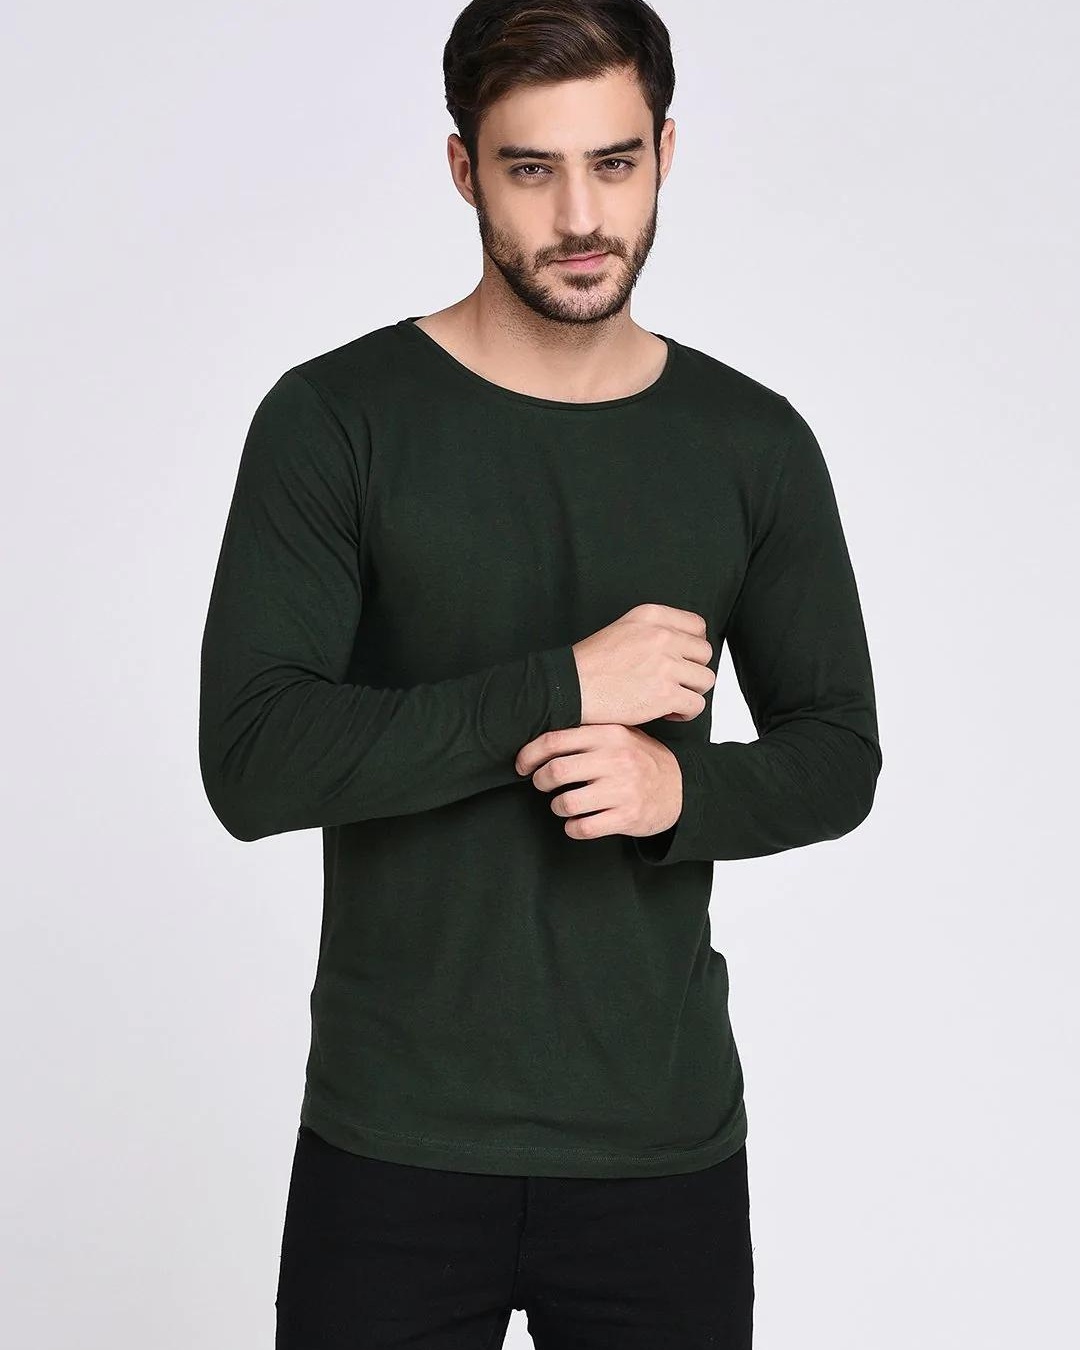 Buy Men's Green Slim Fit T-shirt Online at Bewakoof